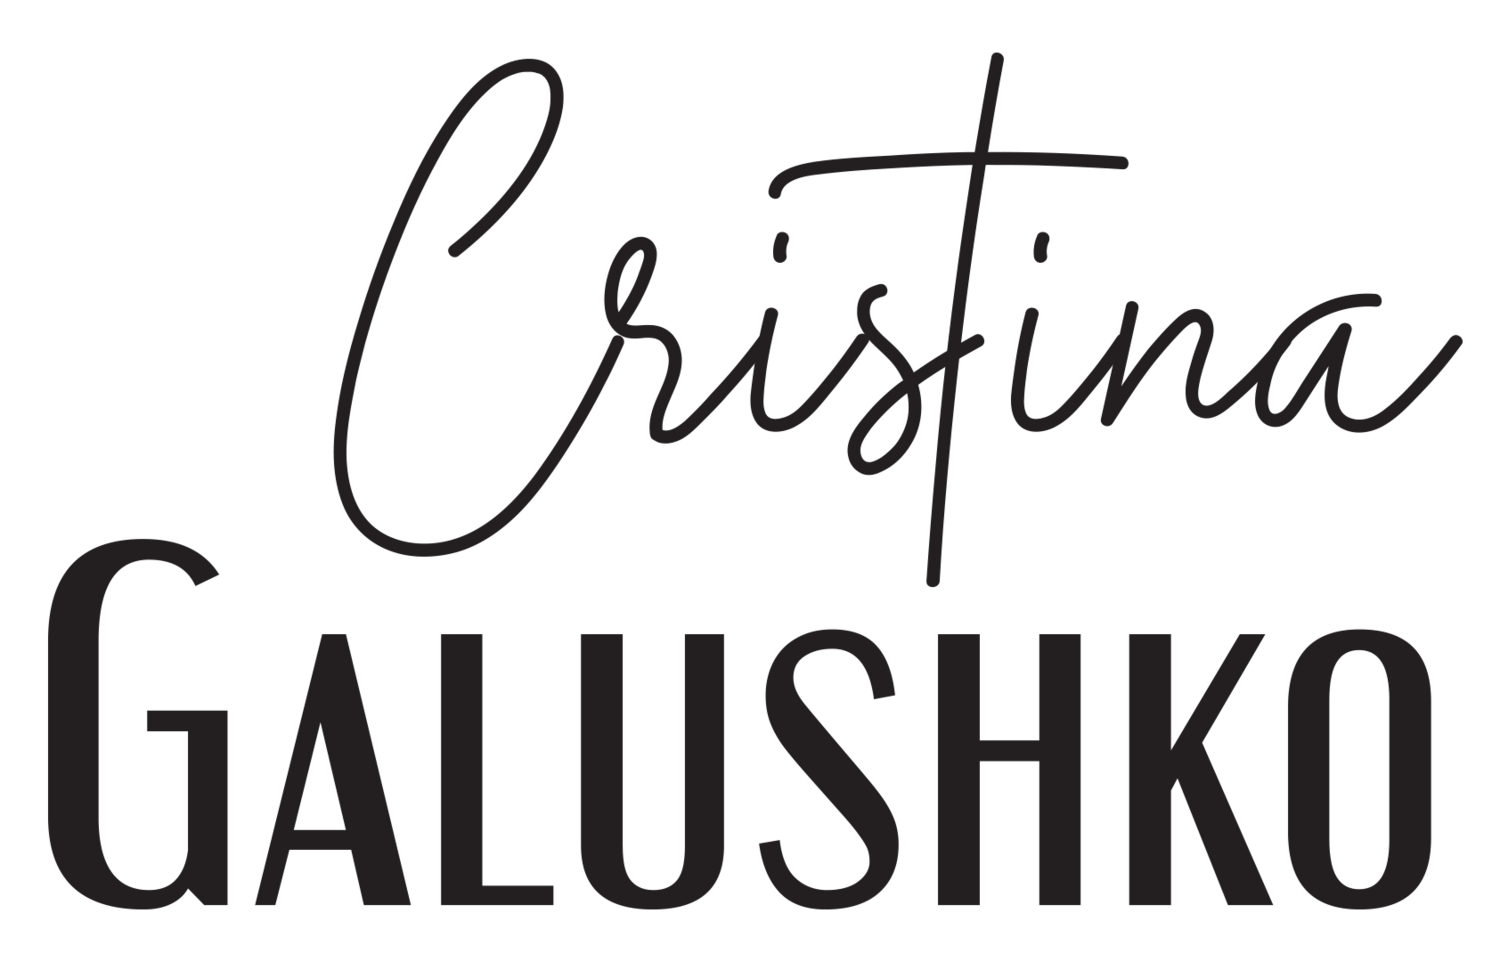 Cristina Galushko 